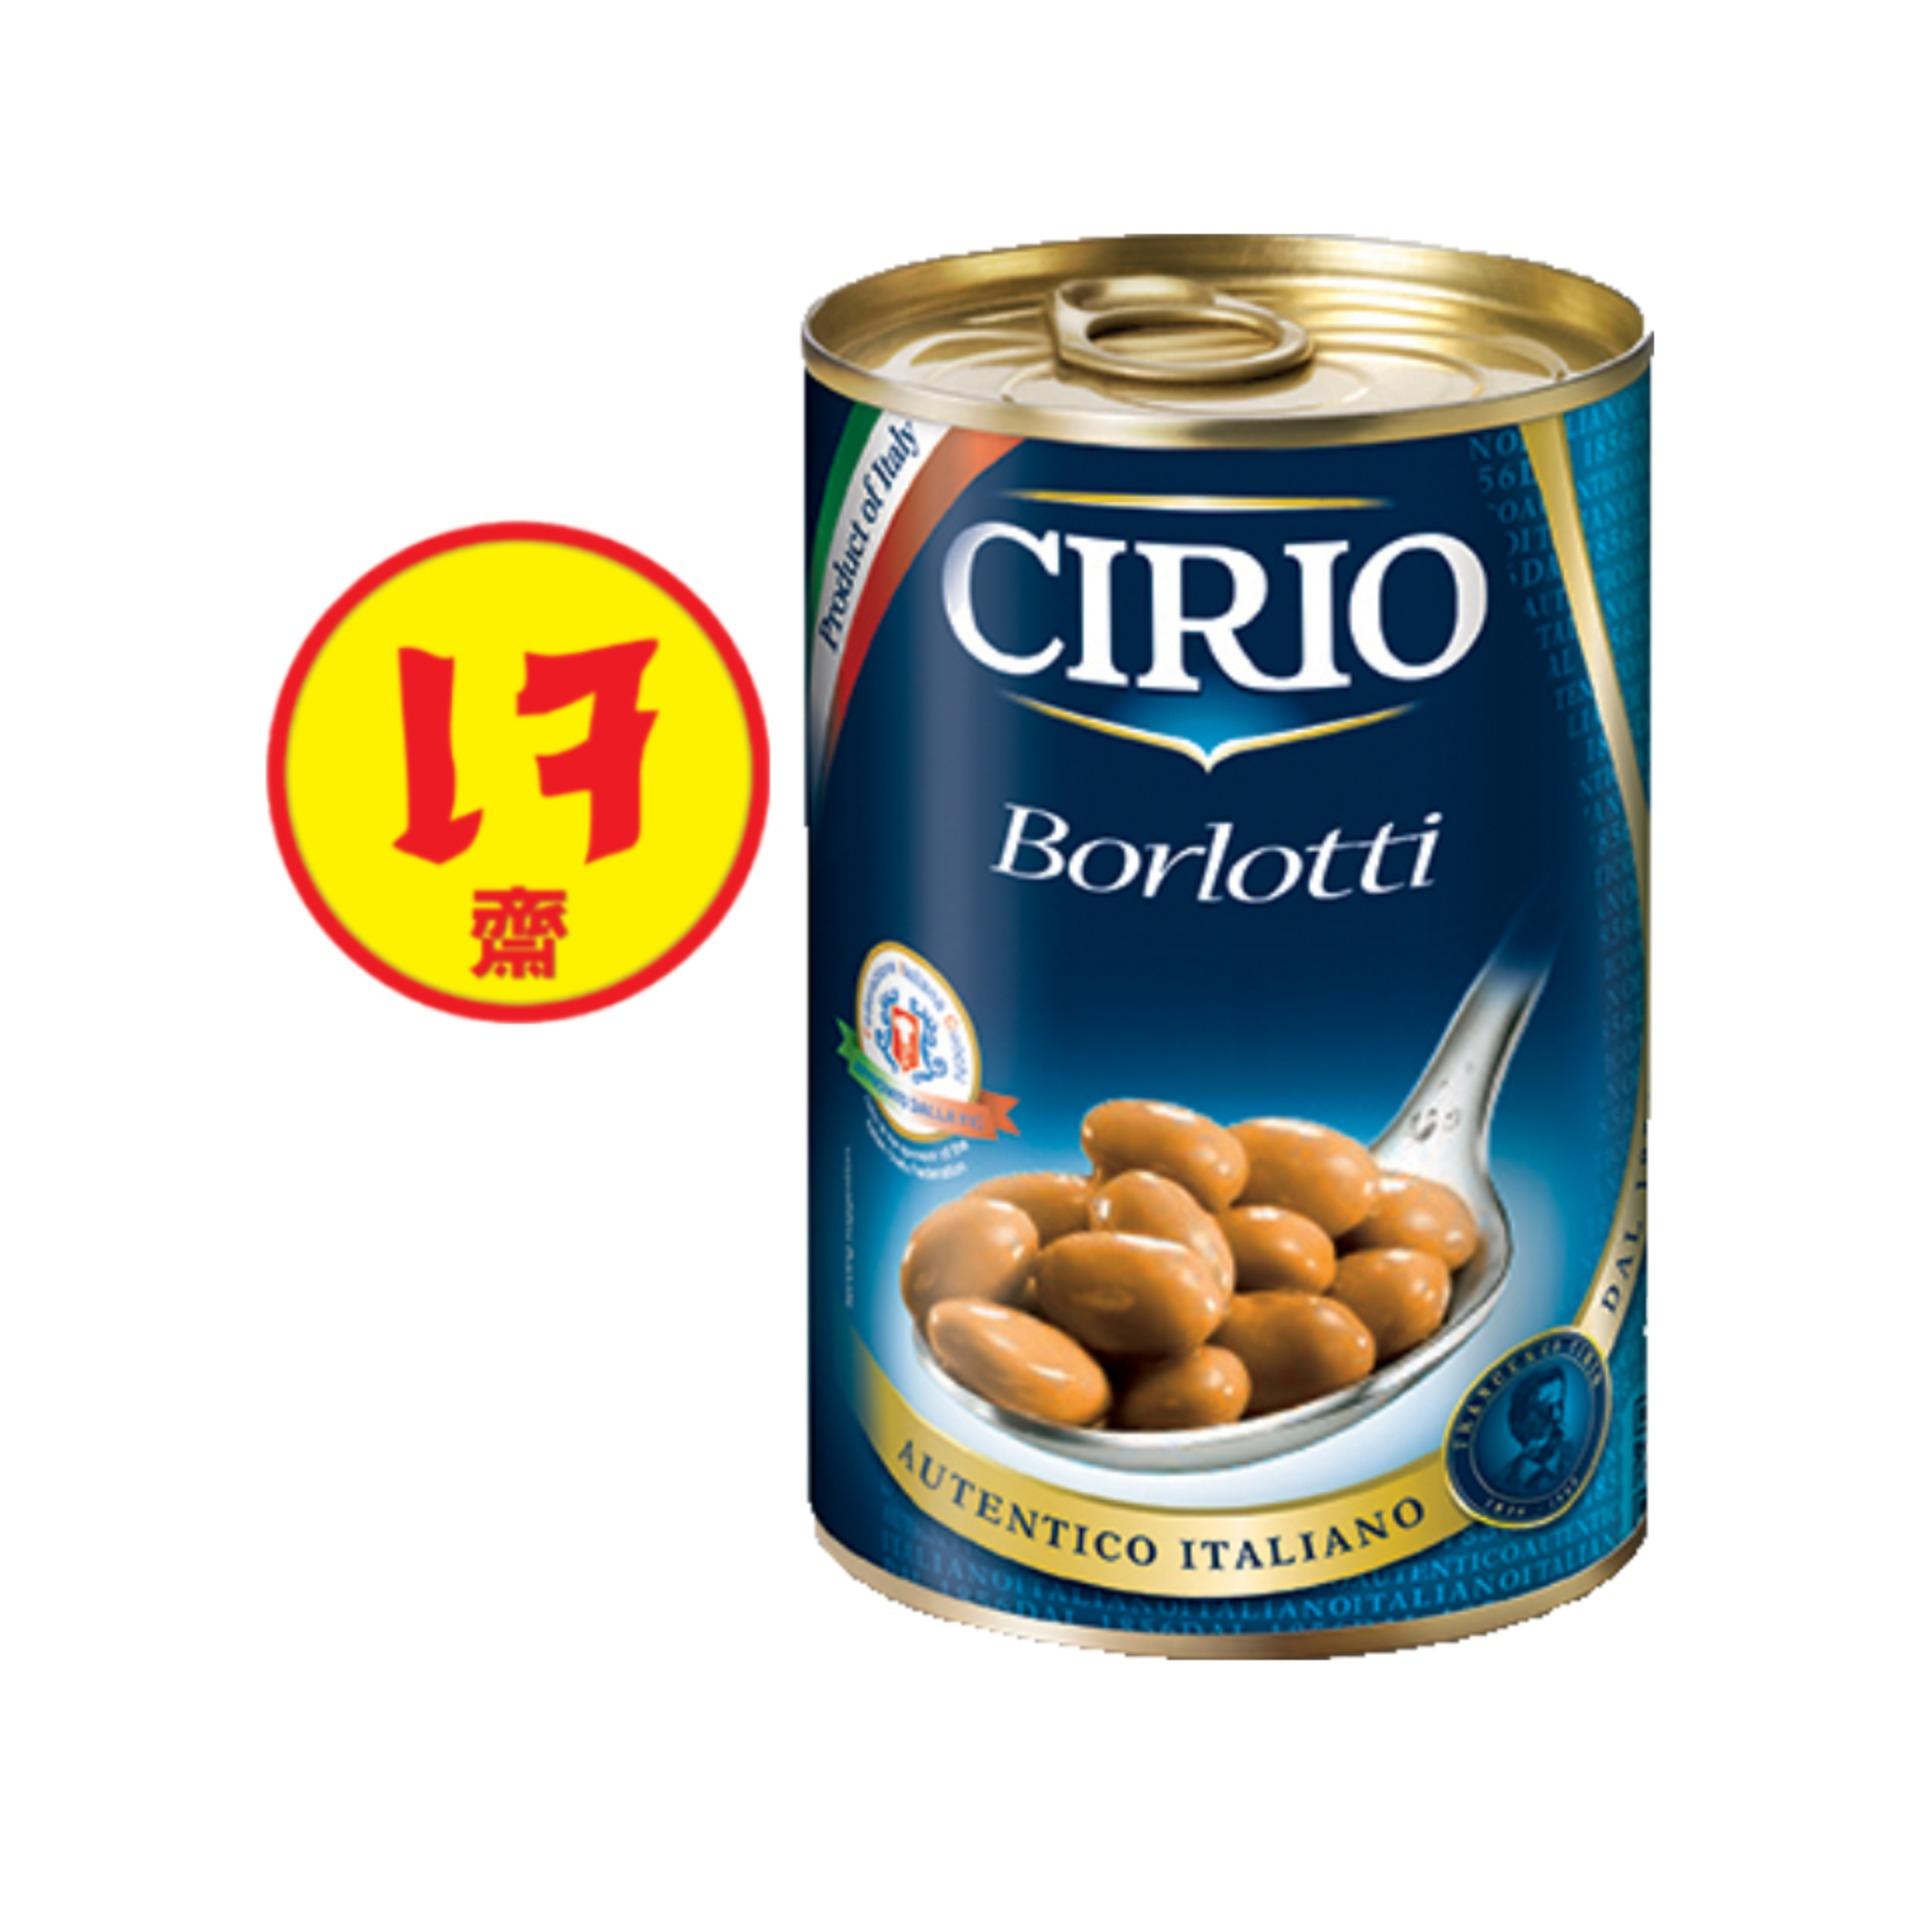 CIRIO Borlotti (ถั่วแดง) 410 gm. ถั่วแดงบรรจุกระป๋อง นำเข้าจากอิตาลี 100%  ขนาด410กรัม